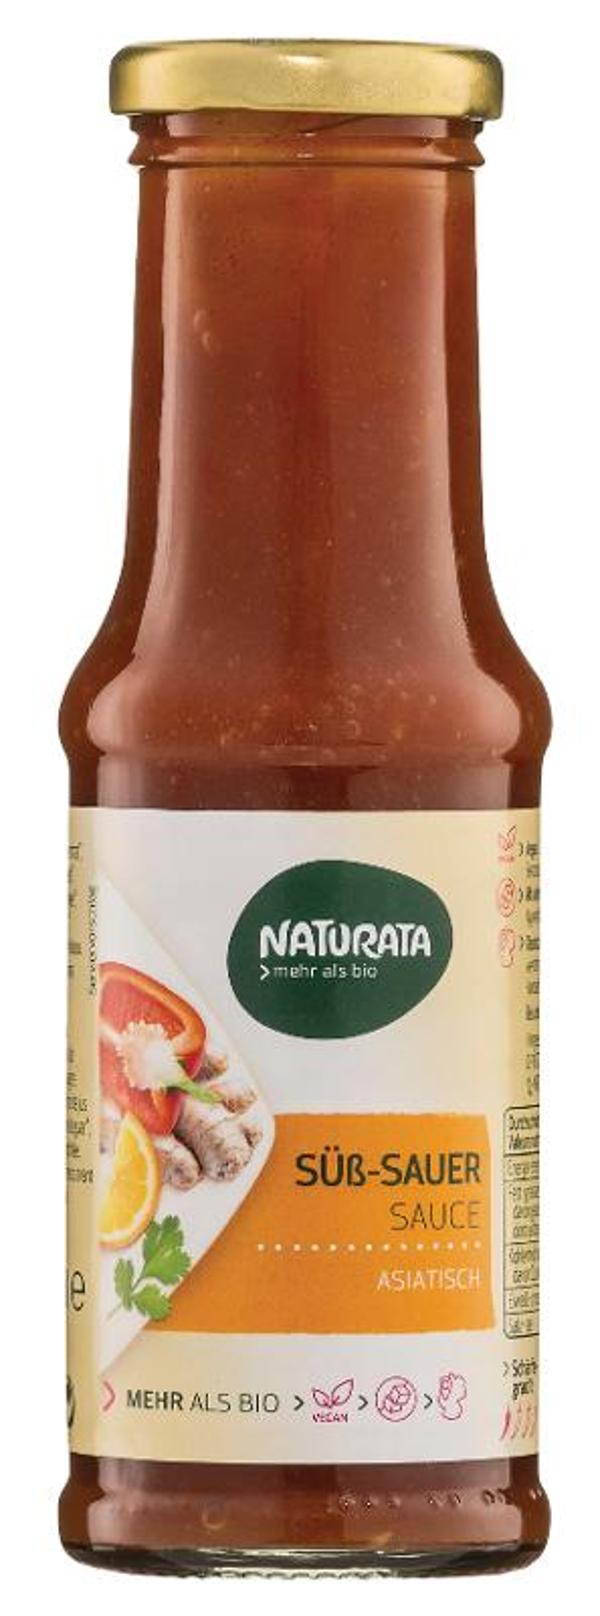 Produktfoto zu Naturata Süß Sauer Sauce - 210ml